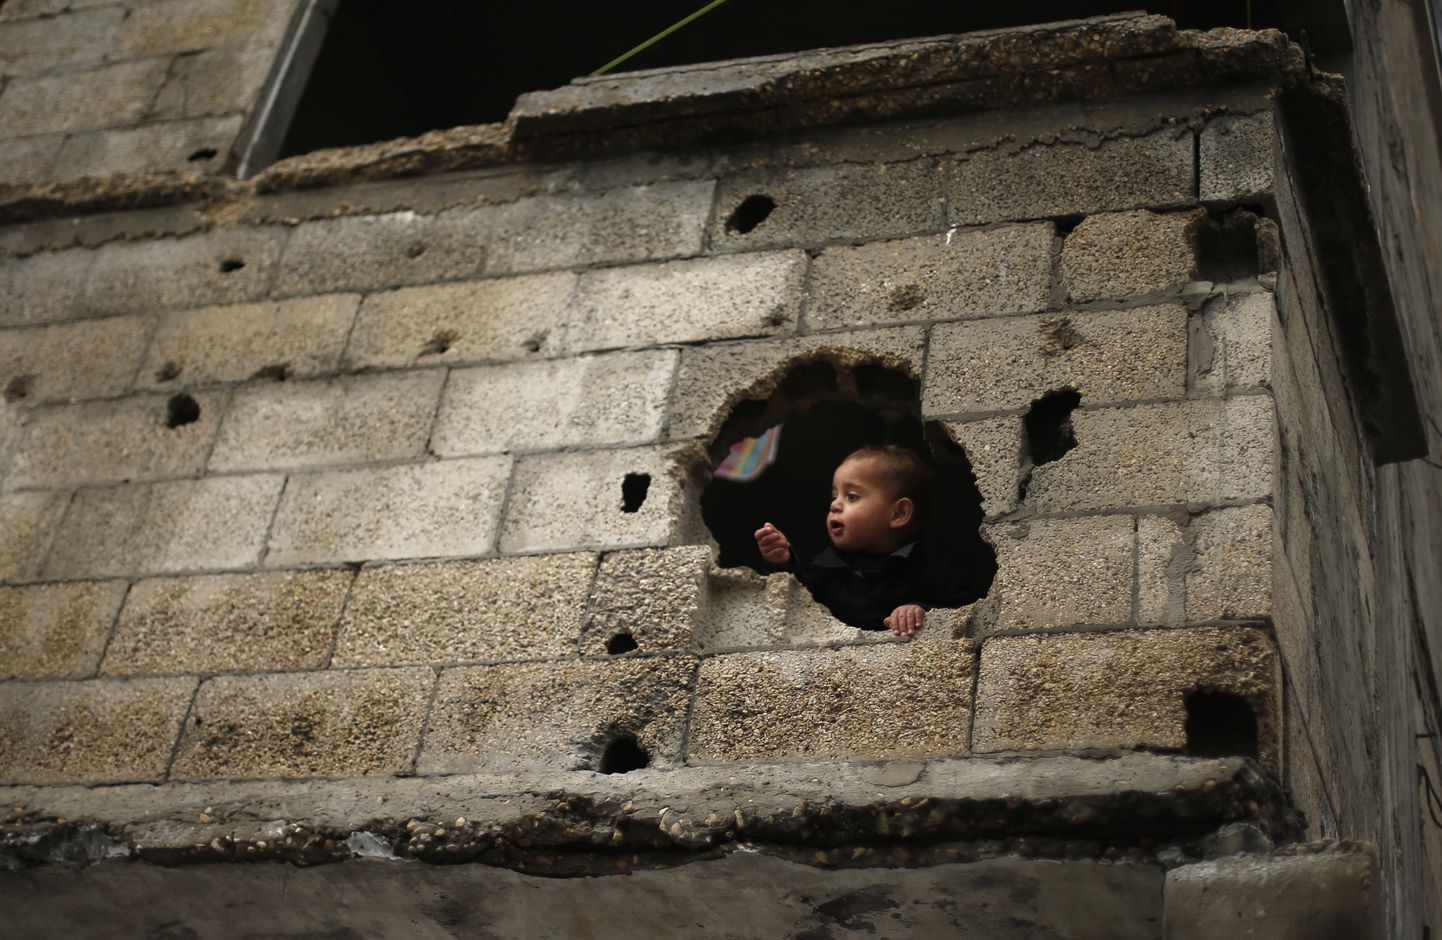 Palestiina poisike vaatab välja Gazas asuva kodumaja seinas olevast august, mis väidetavalt tekkis Iisraeli tulistatud kahurikuulist juulis-augustis 2014.